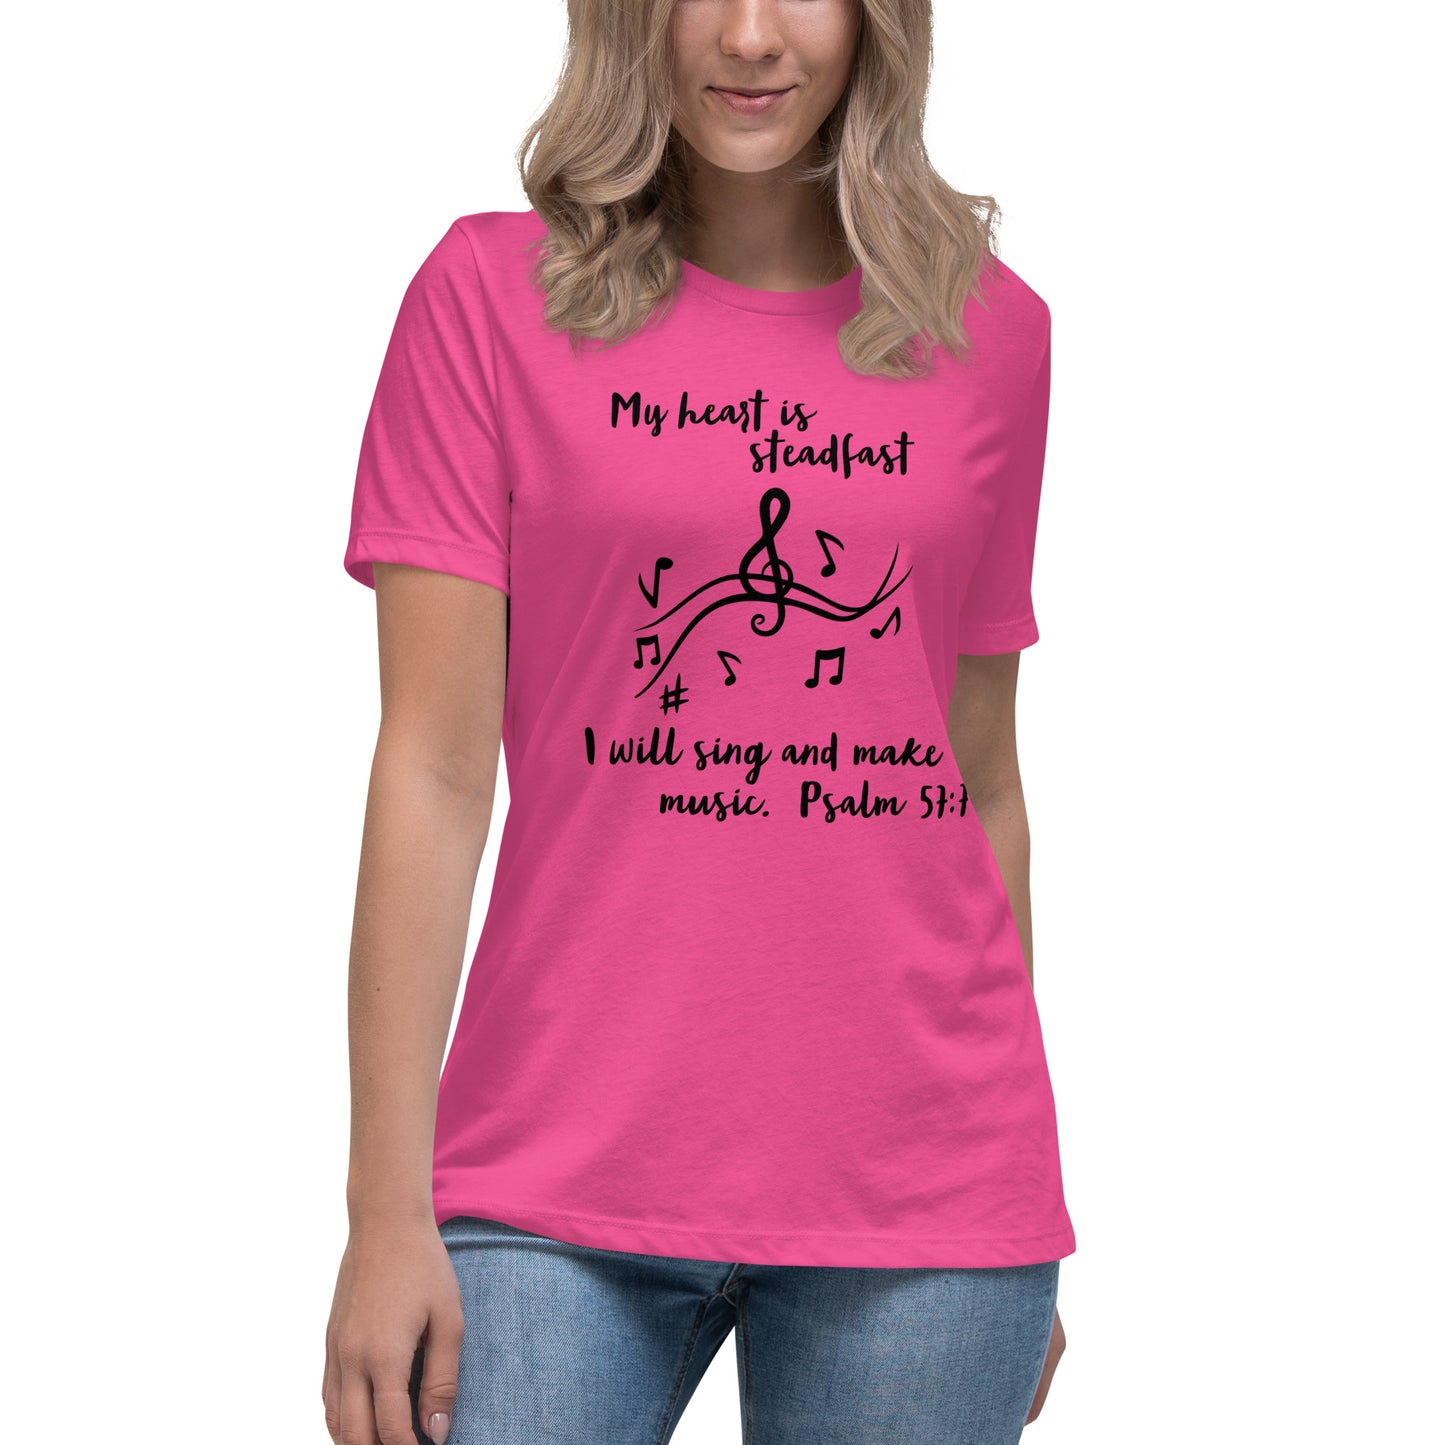 Pink womens christian tee shirt